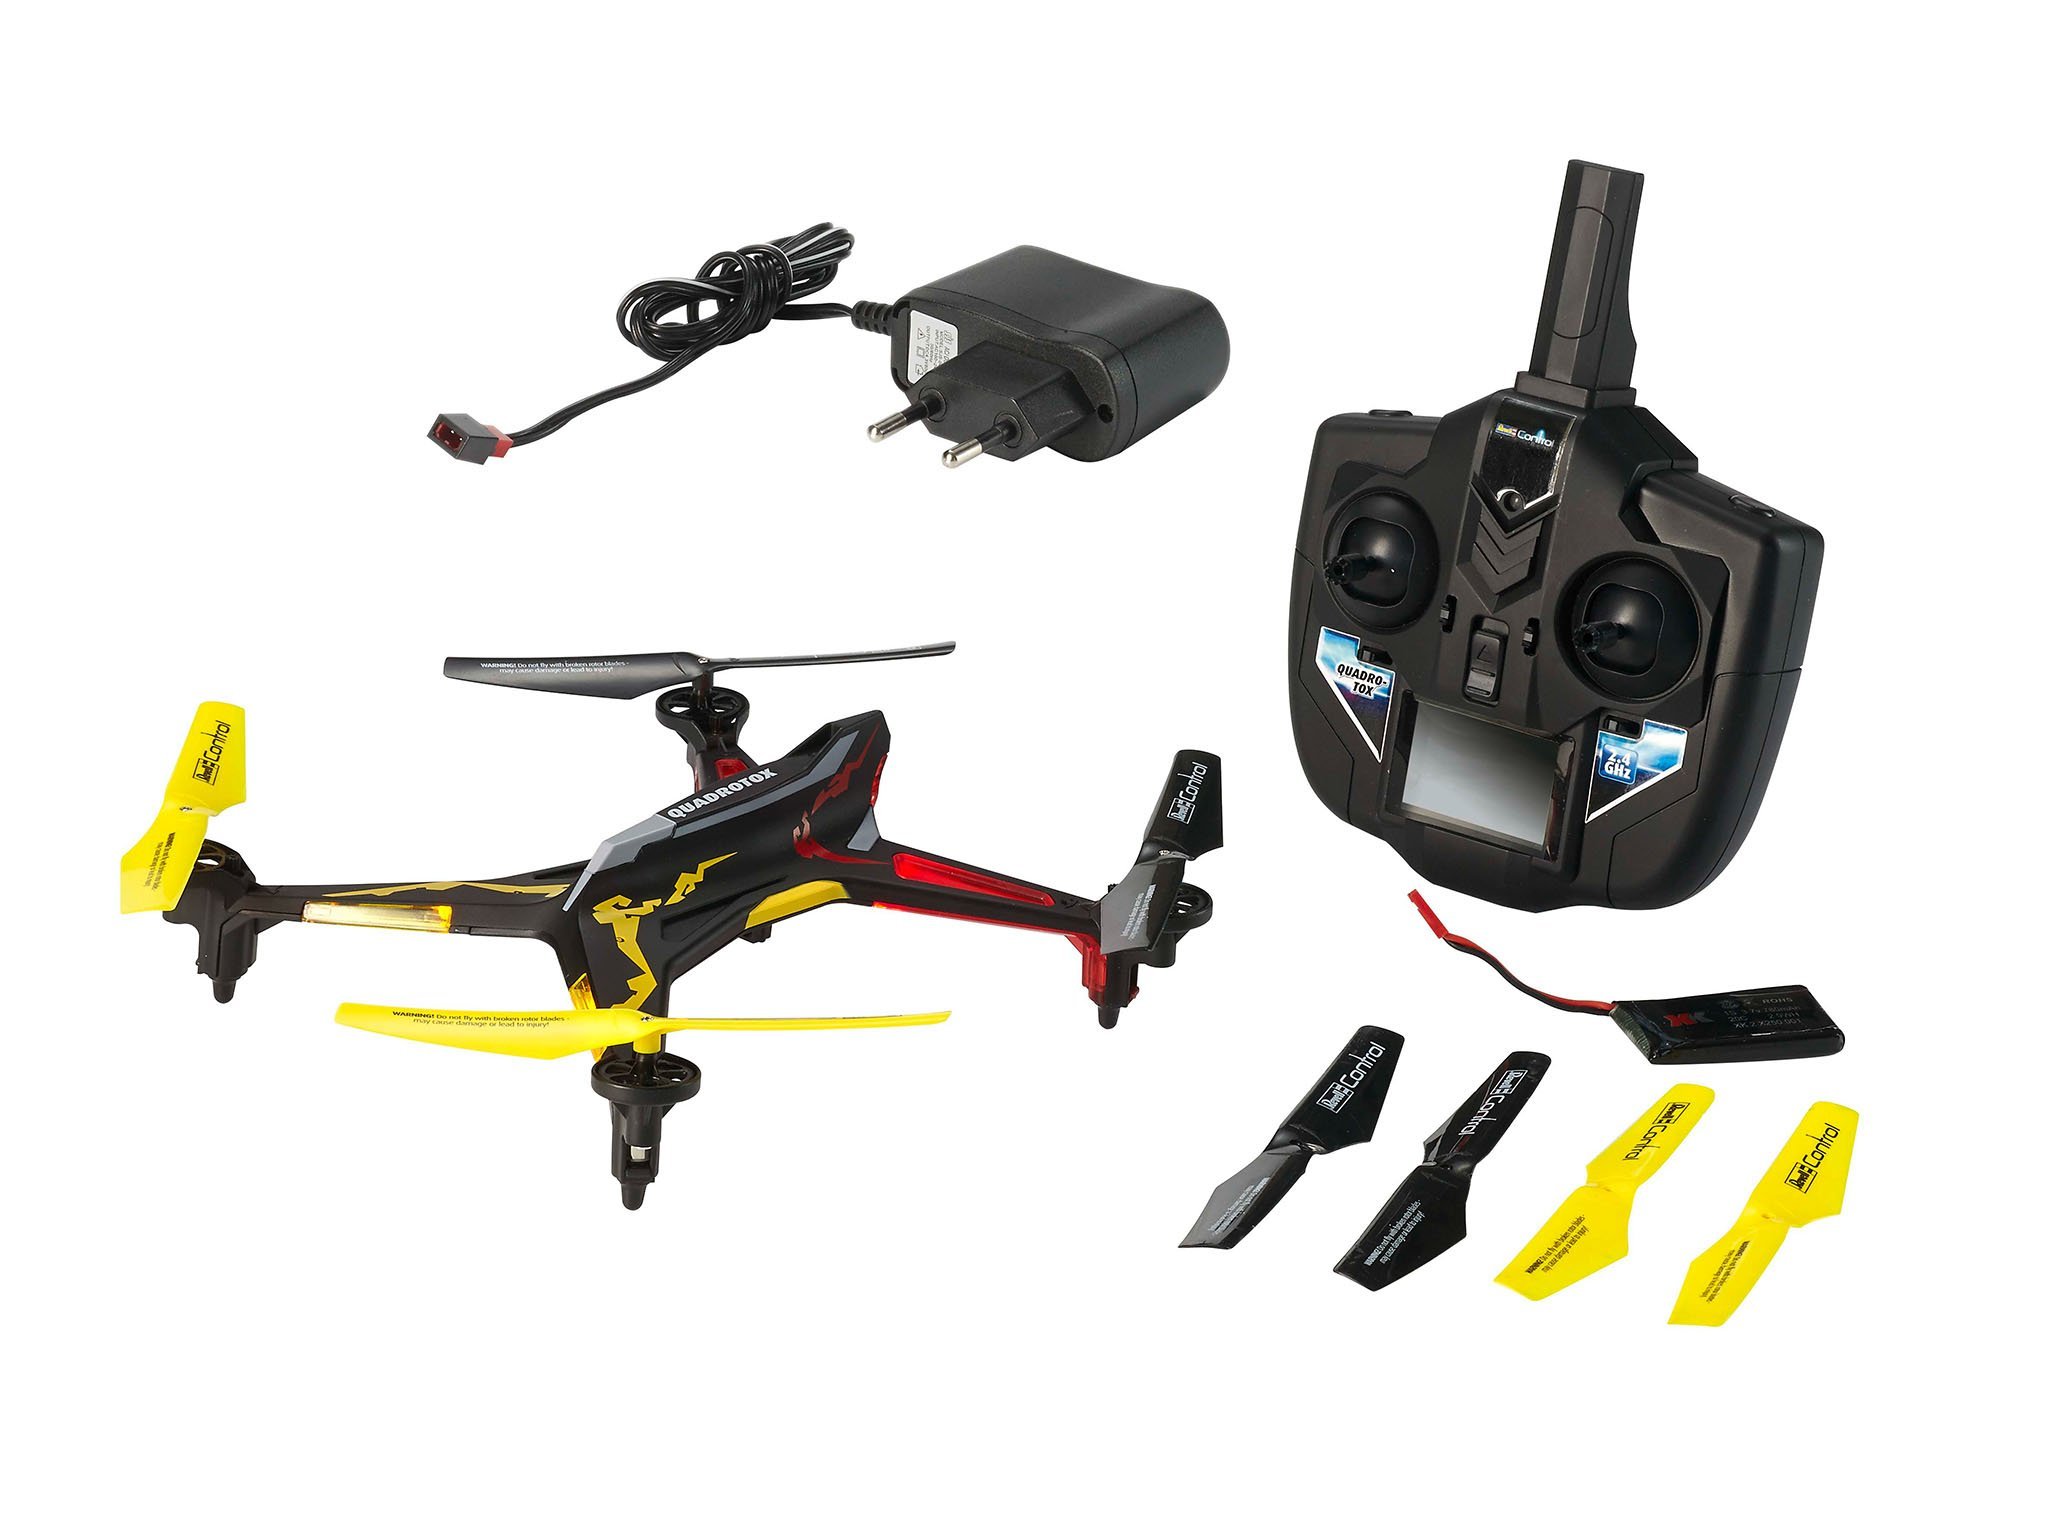 Revell Control RC Quadrocopter, ferngesteuert mit 2,4 GHz Fernsteuerung, 780 mAh Akku, schnell und wendig, Geschwindigkeisstufen und Flip-Funktion, Headless, LED-Beleuchtung, robust, QUADROTOX 23913